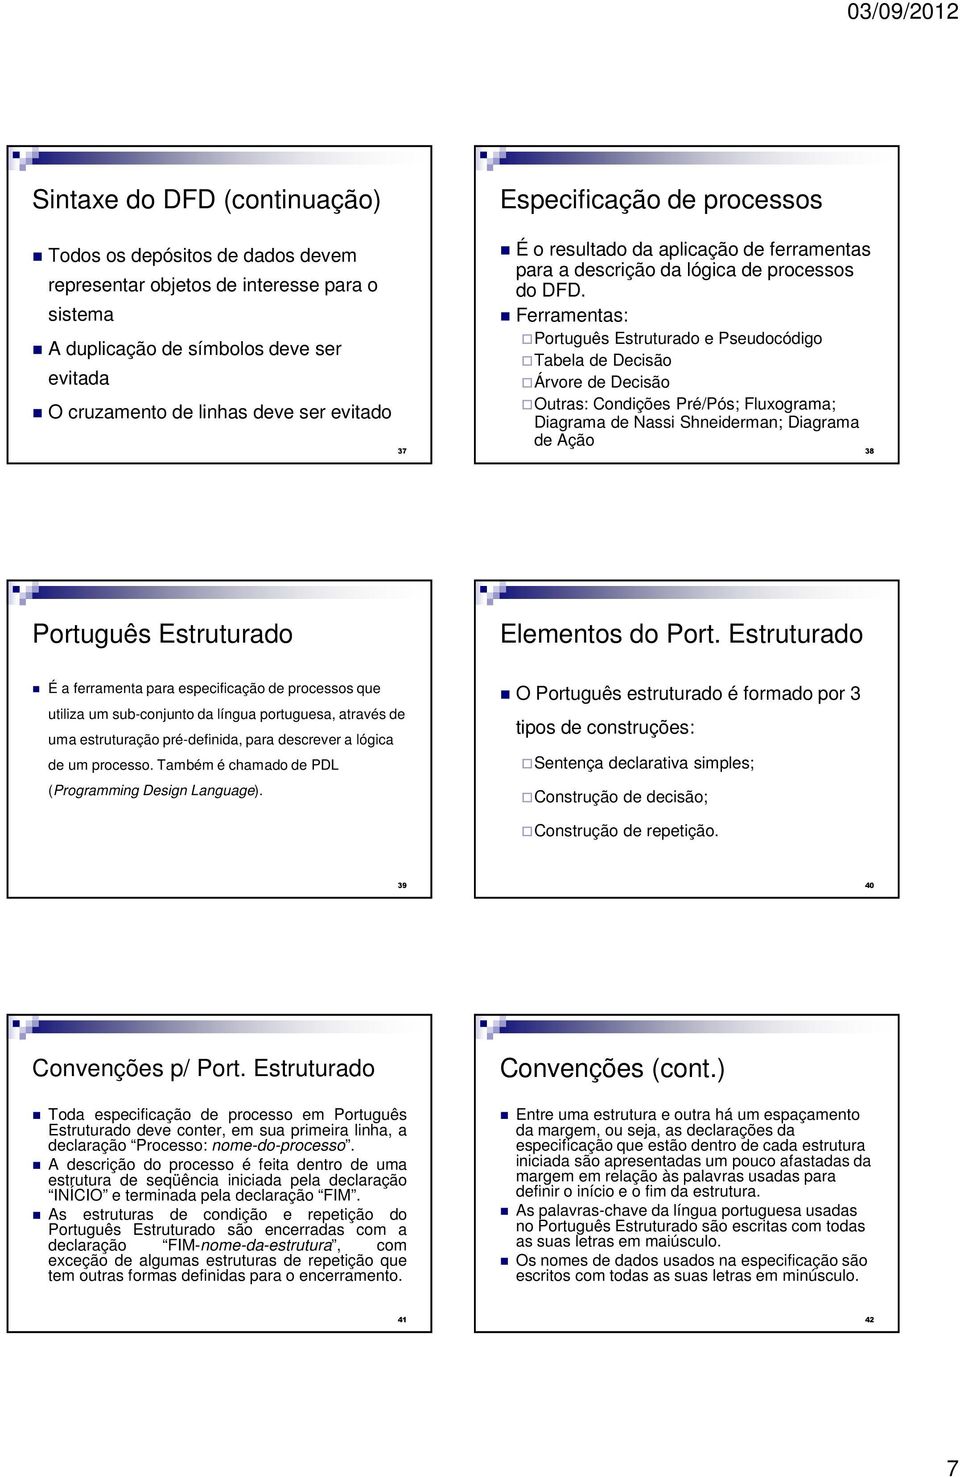 Ferramentas: Português Estruturado e Pseudocódigo Tabela de Decisão Árvore de Decisão Outras: Condições Pré/Pós; Fluxograma; Diagrama de Nassi Shneiderman; Diagrama de Ação 38 Português Estruturado